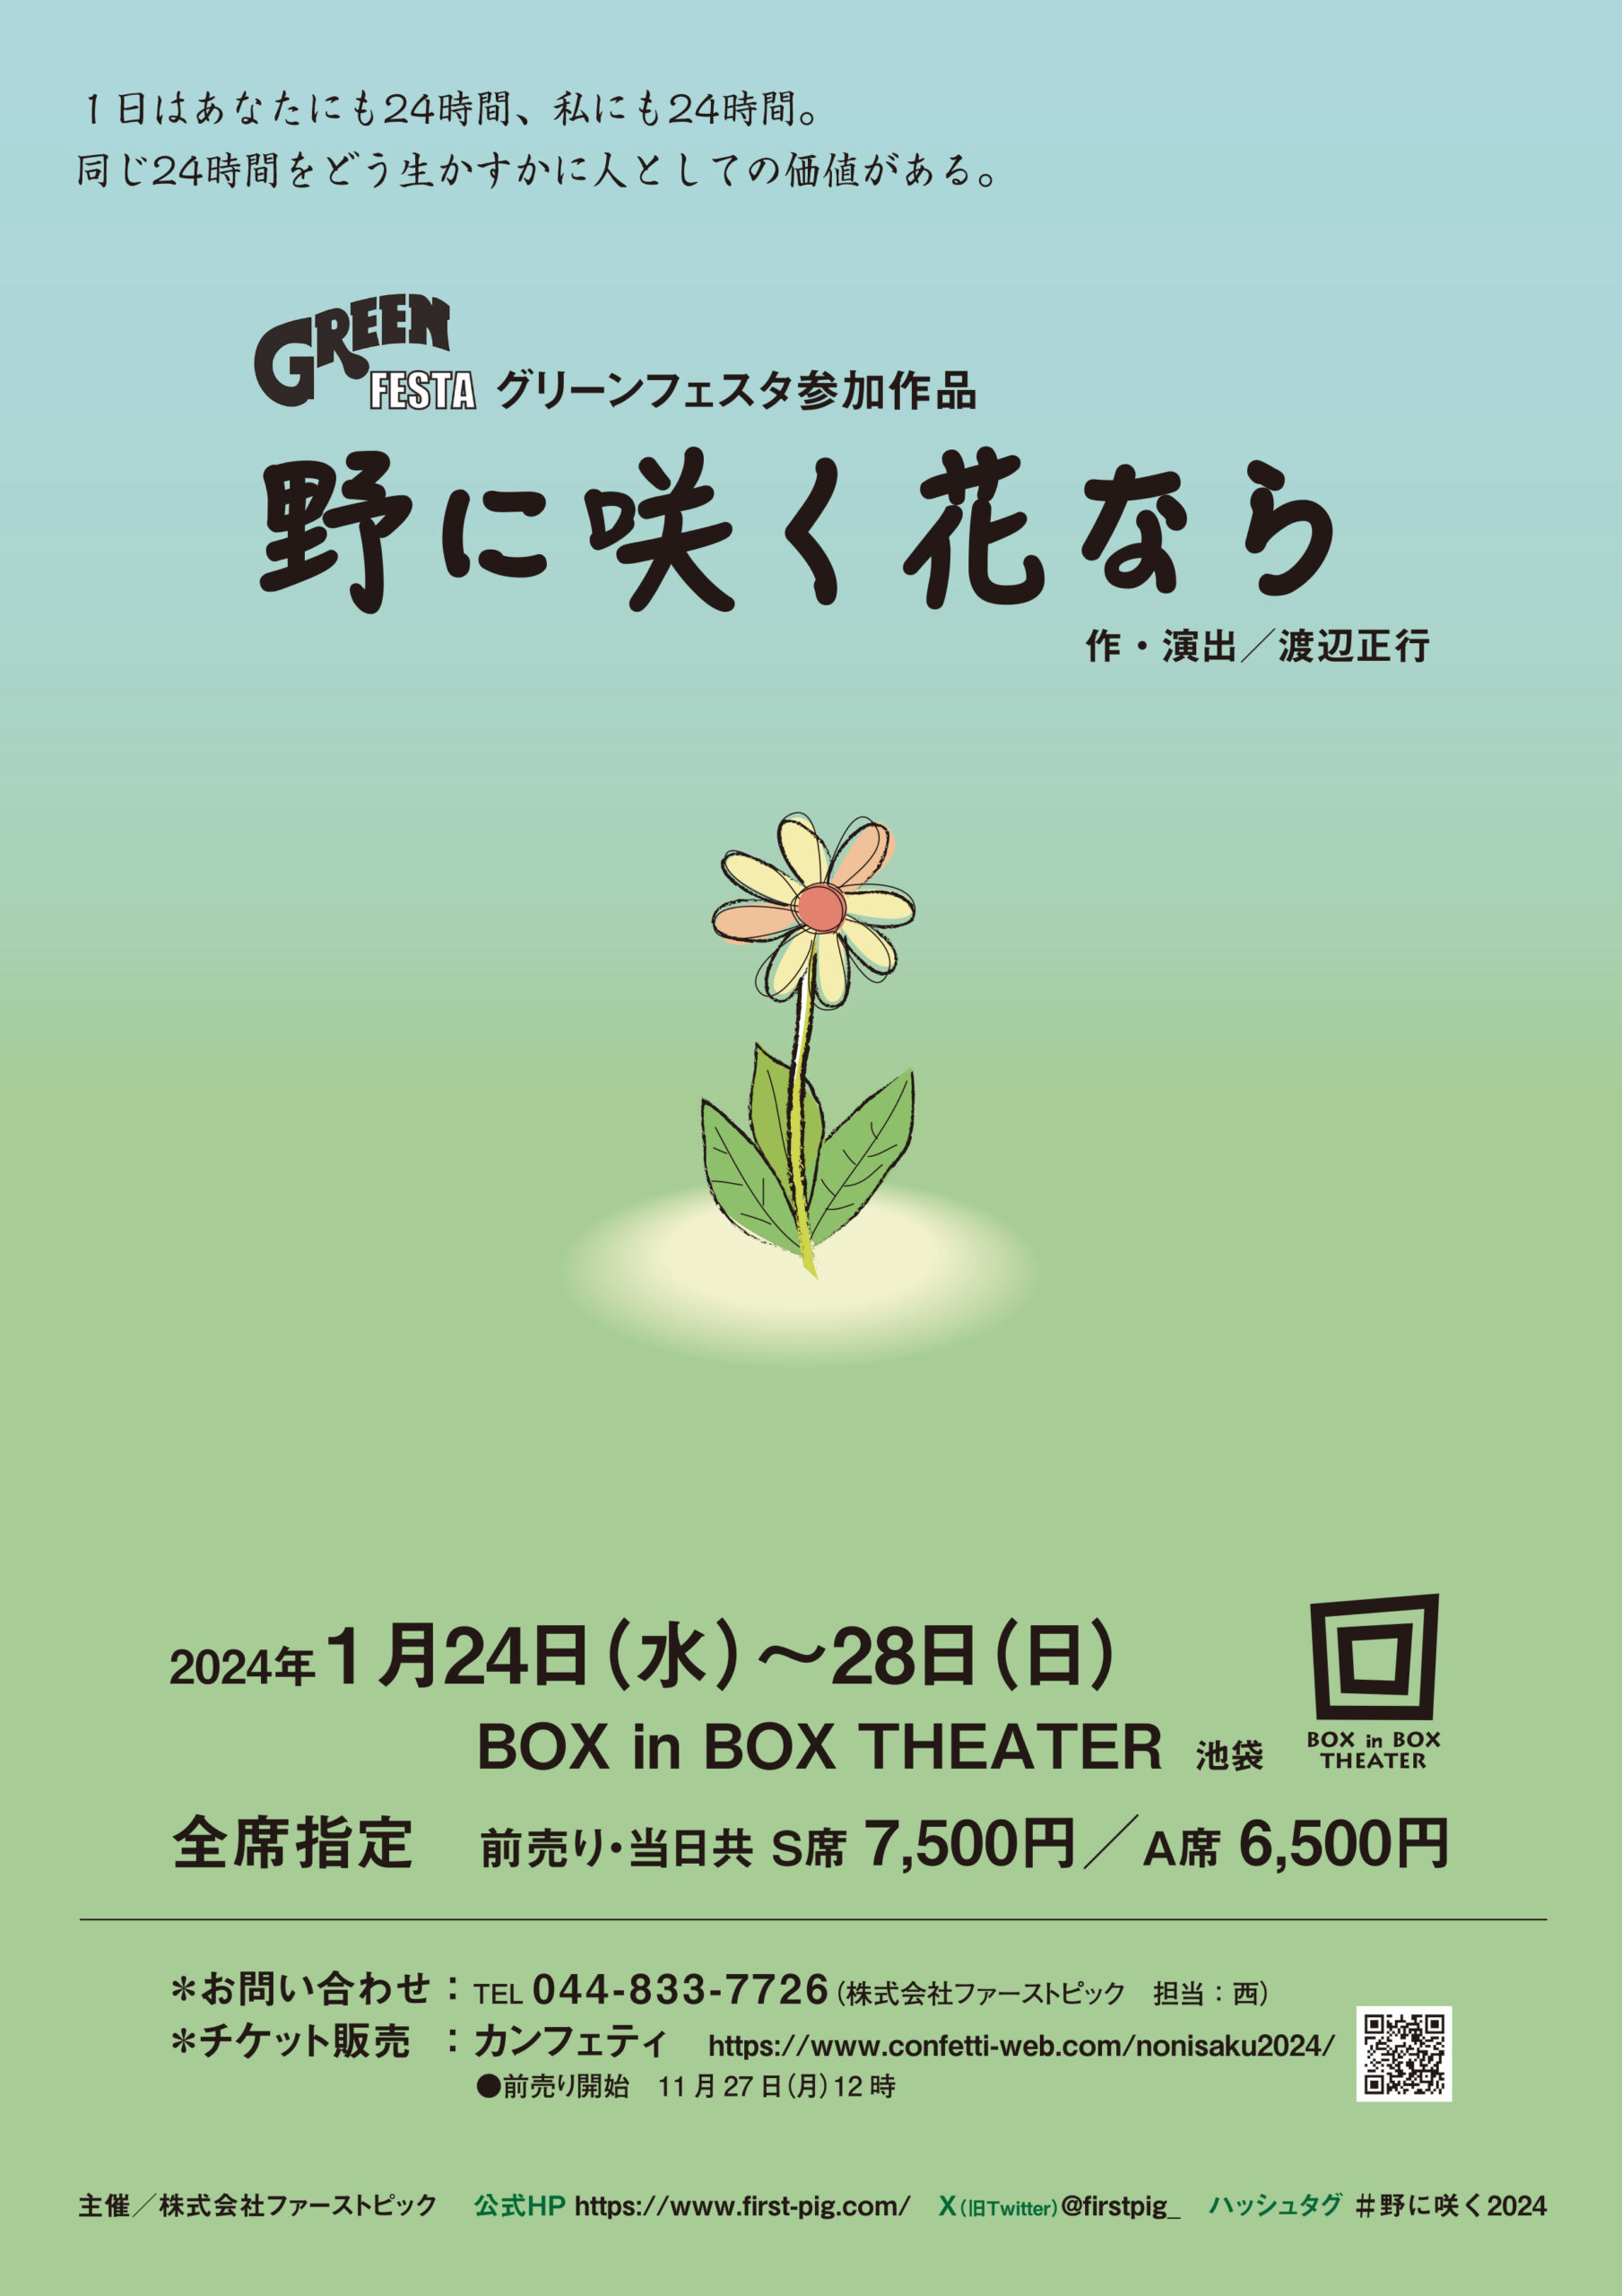 【GREEN FESTA 2024 参加作品】<br>『野に咲く花なら』